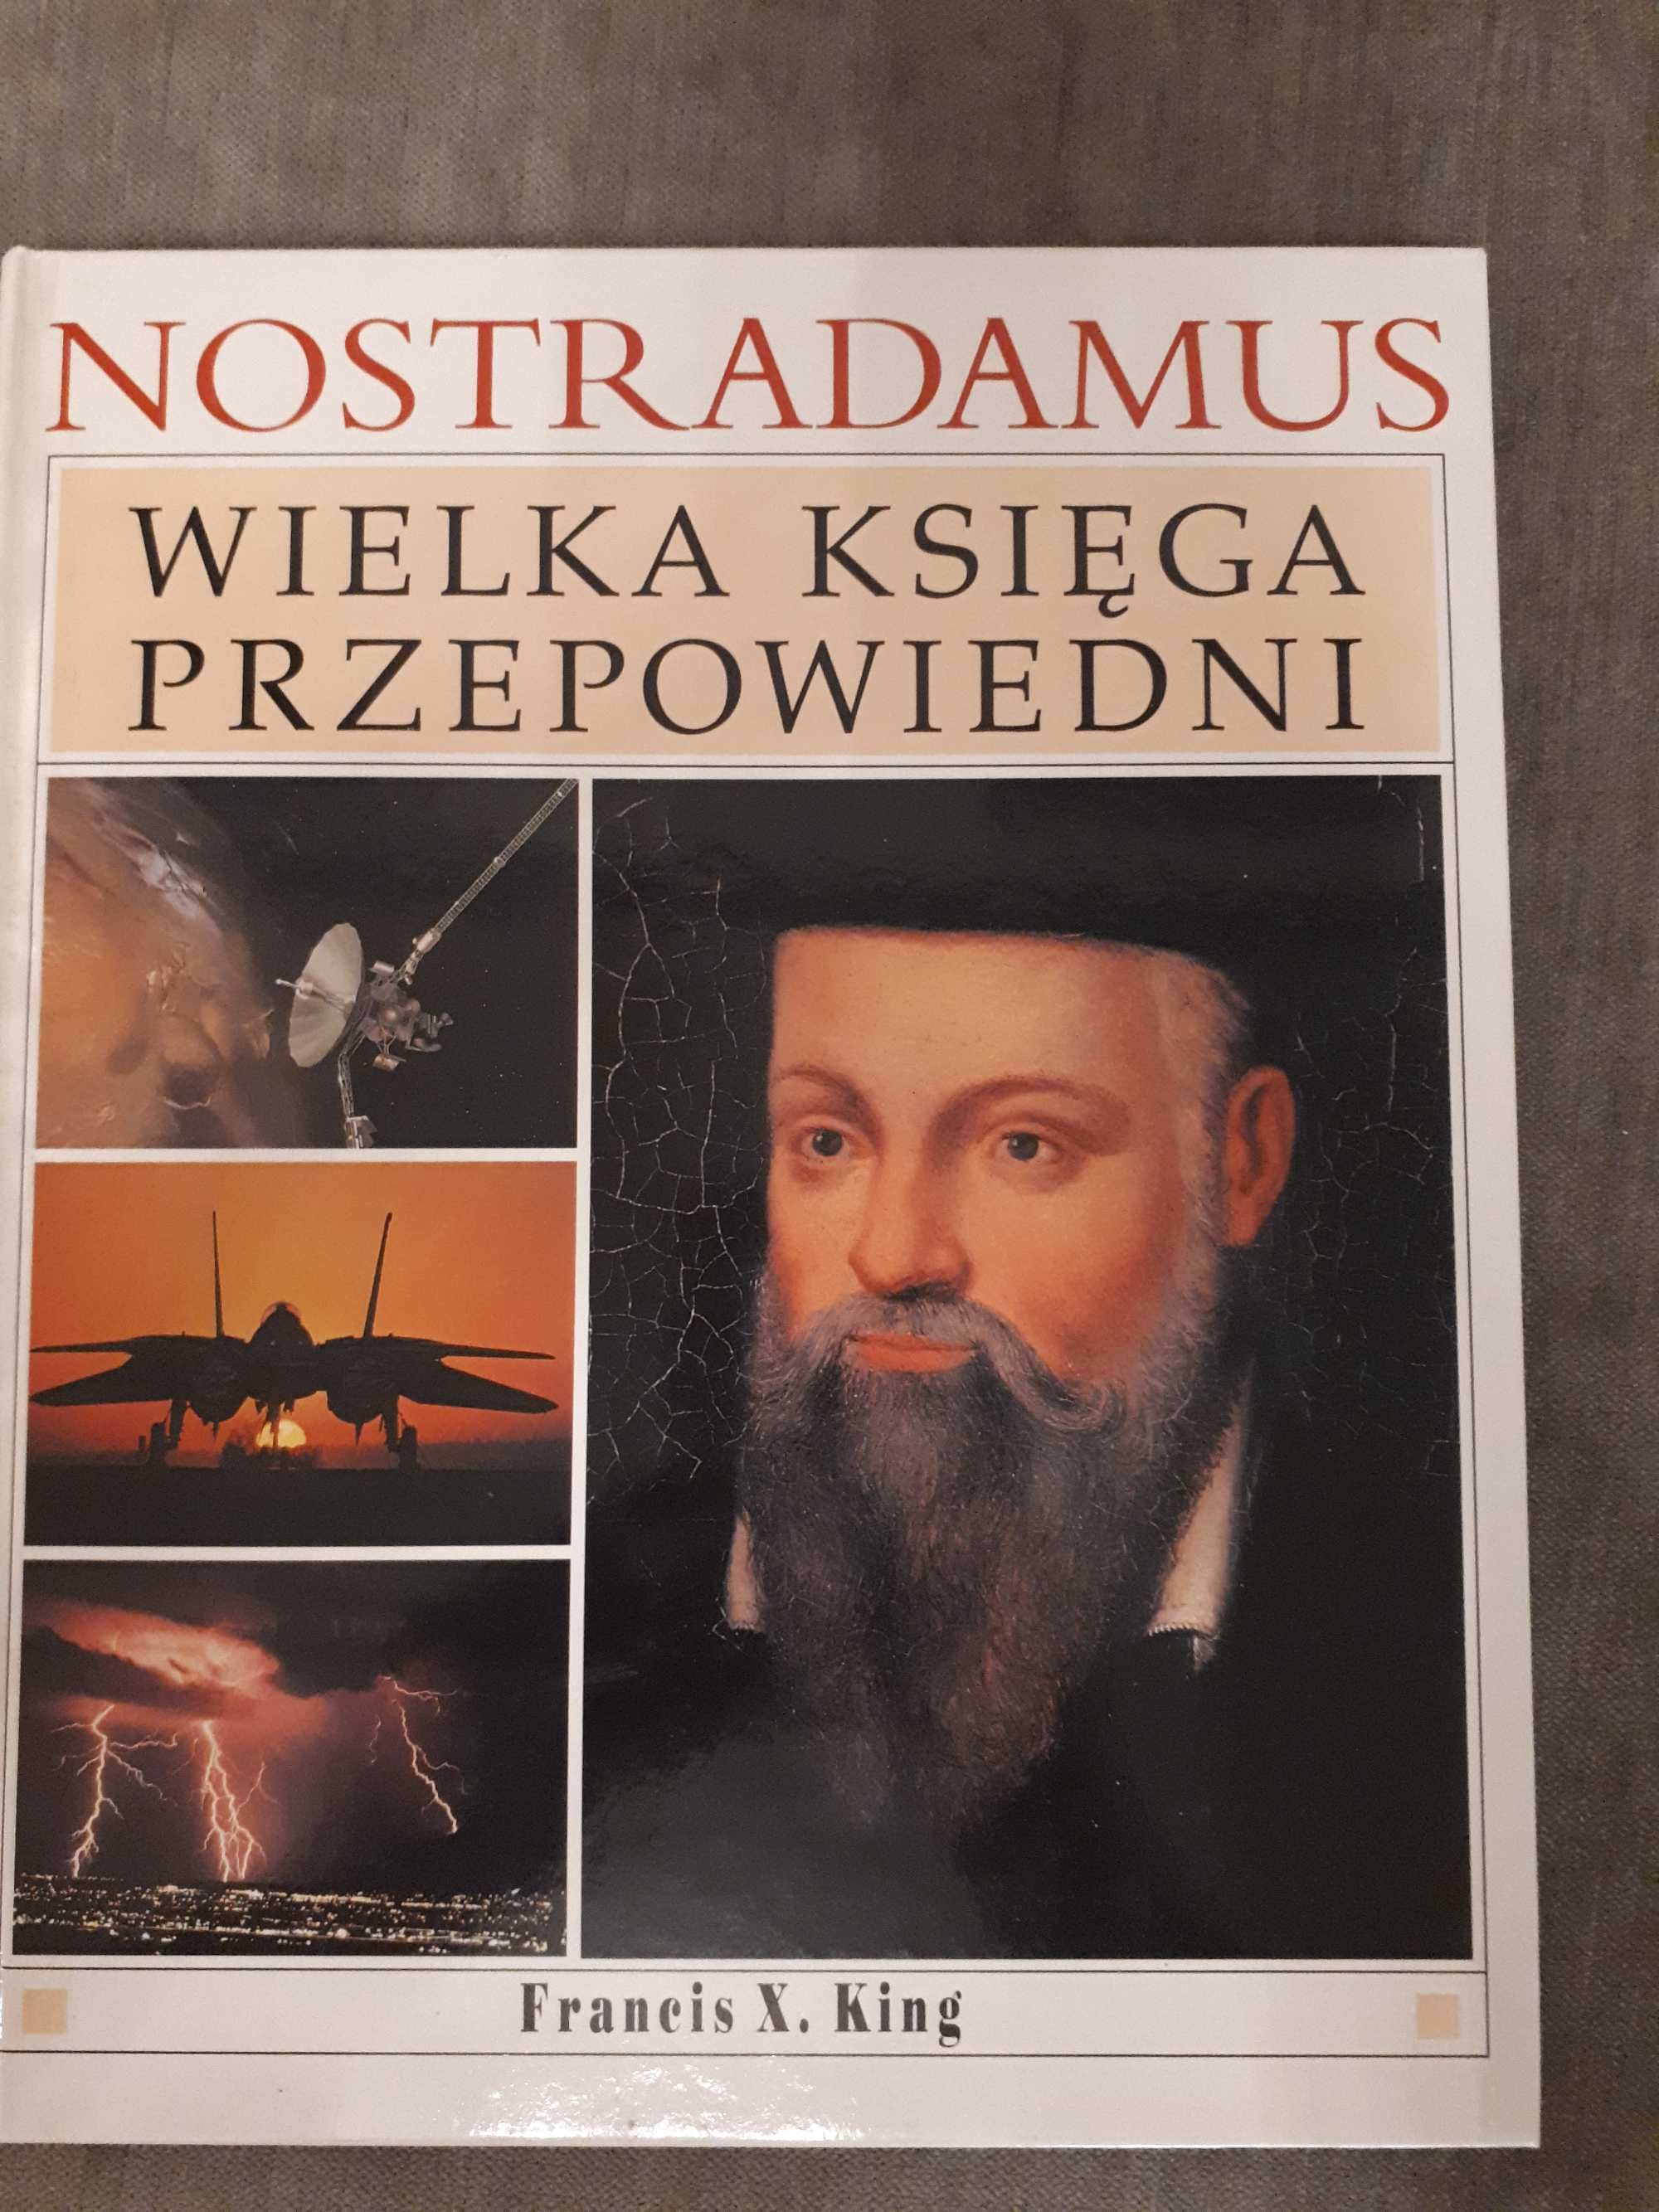 Nostradamus - wielka księga przepowiedni